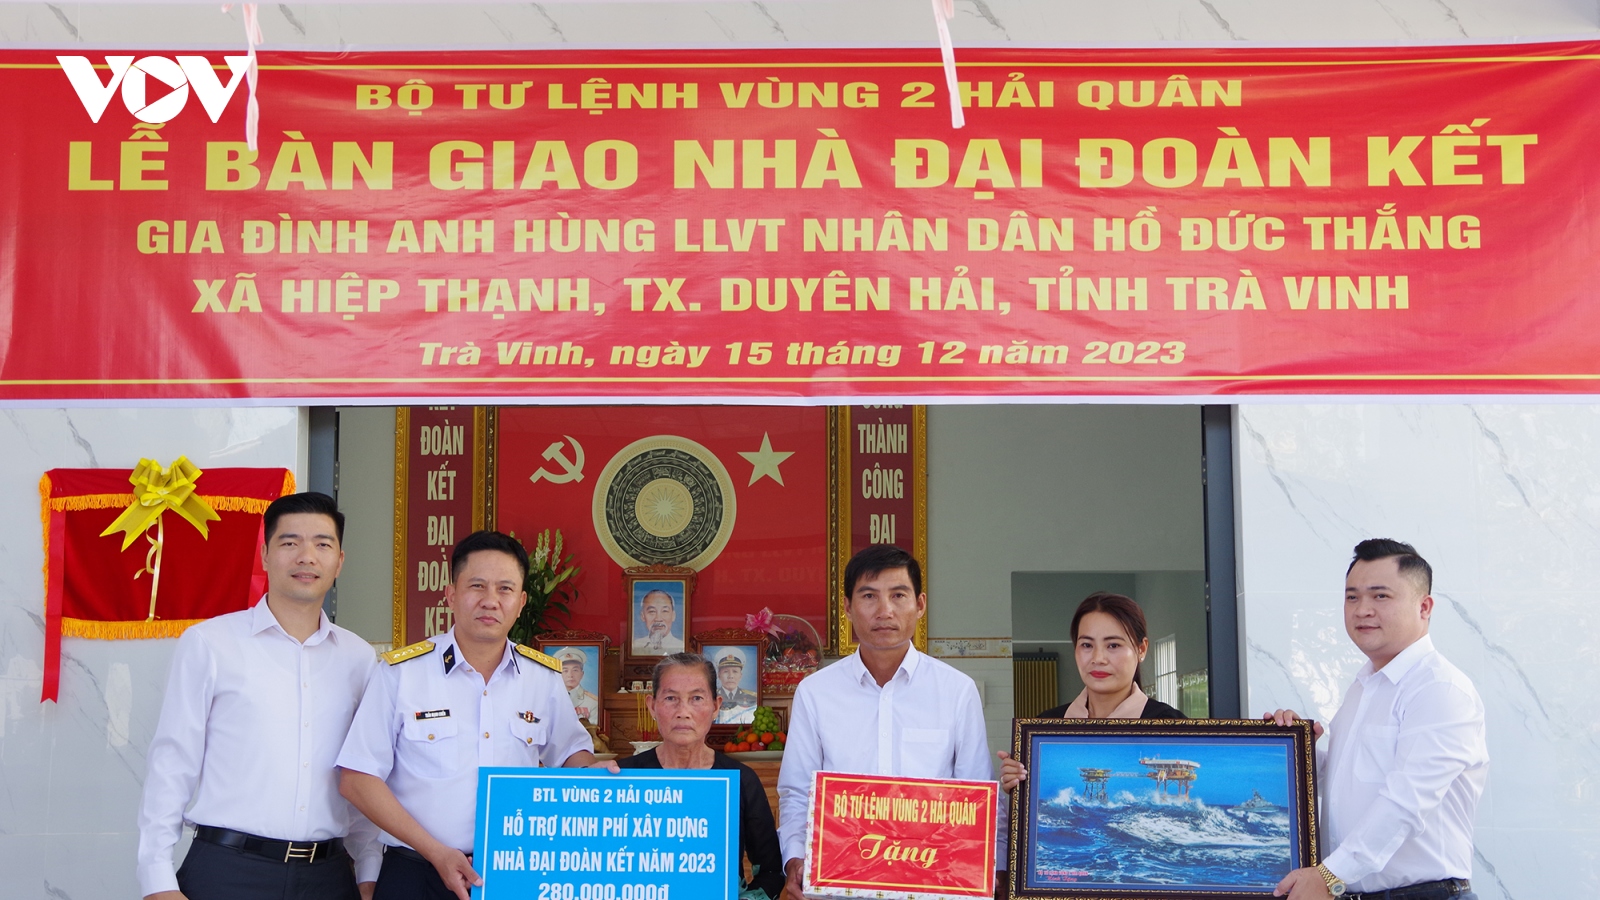 Vùng 2 Hải quân trao tặng nhà “Đại đoàn kết” cho gia đình Anh hùng LLVTND